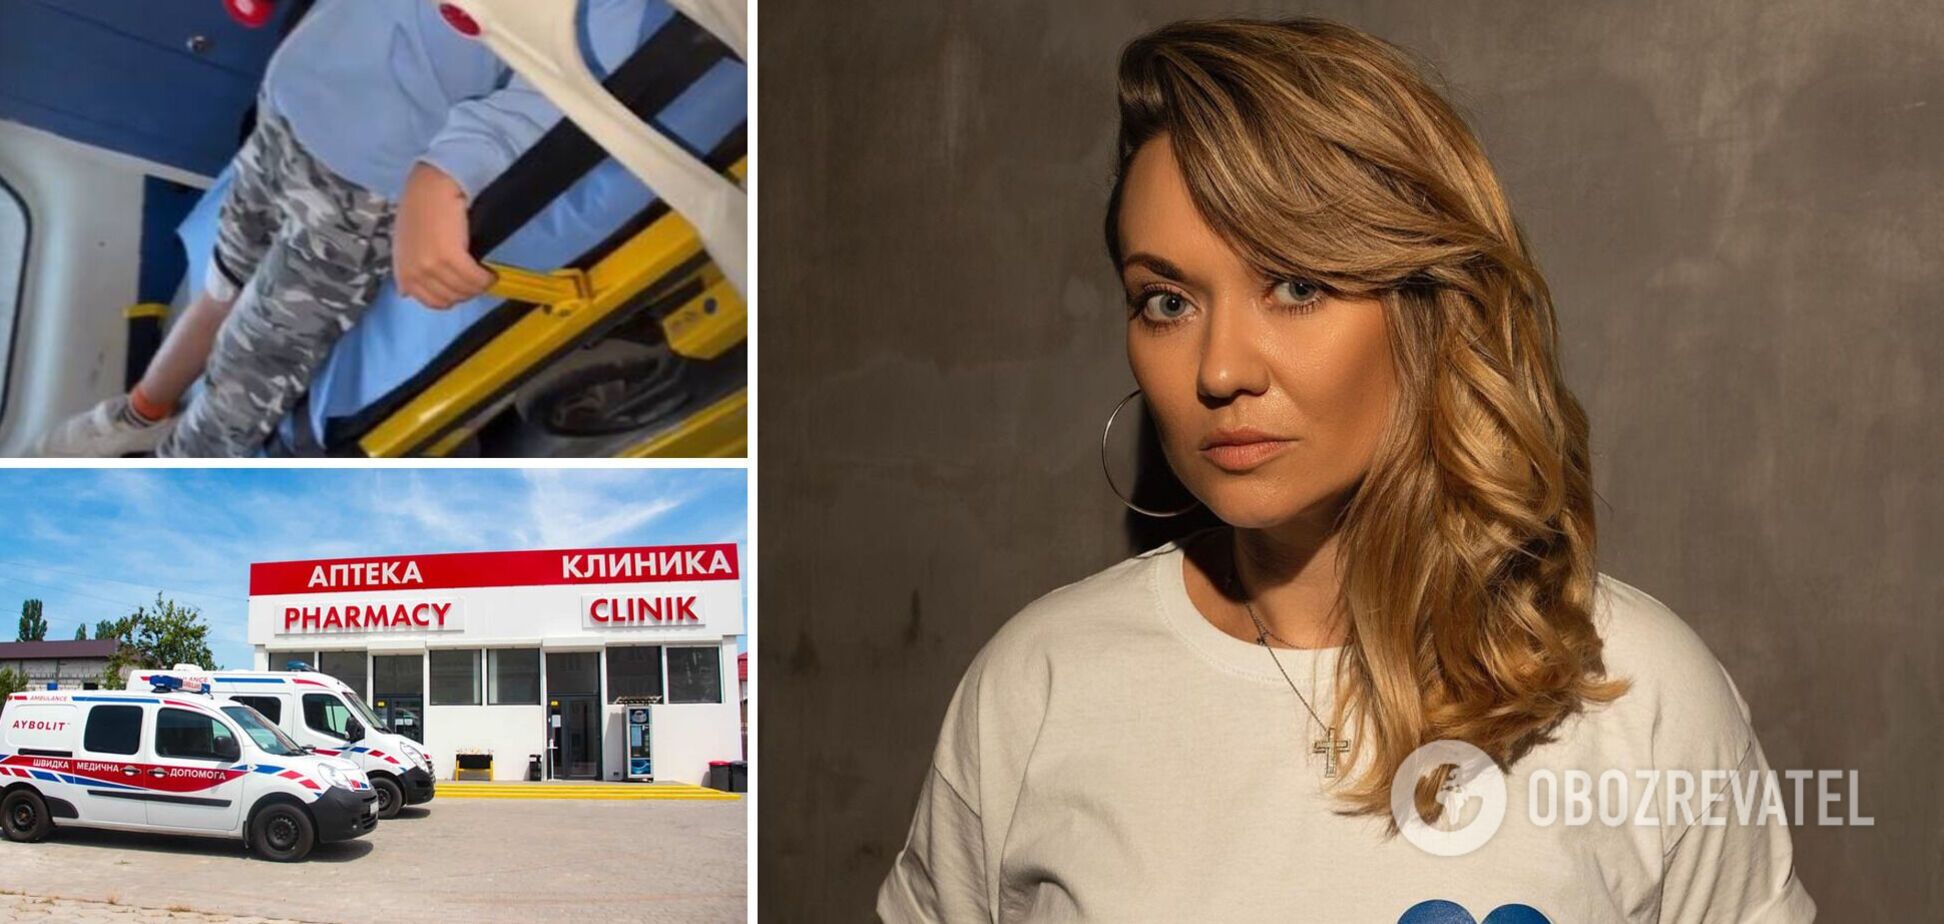 'Якщо син буде плакати, зашивати не буду': акторка Анна Саліванчук поскаржилася на медицину в Буковелі та Яремчі